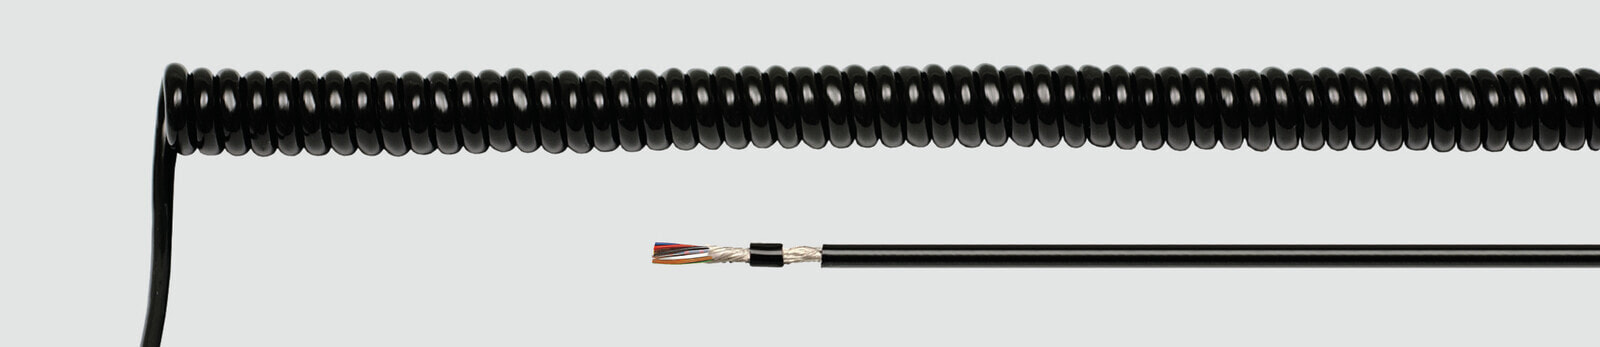 Helukabel 85985 - Low voltage cable - Black - Cooper - 0.25 mm² - 156 kg/km - -25 - 70 °C